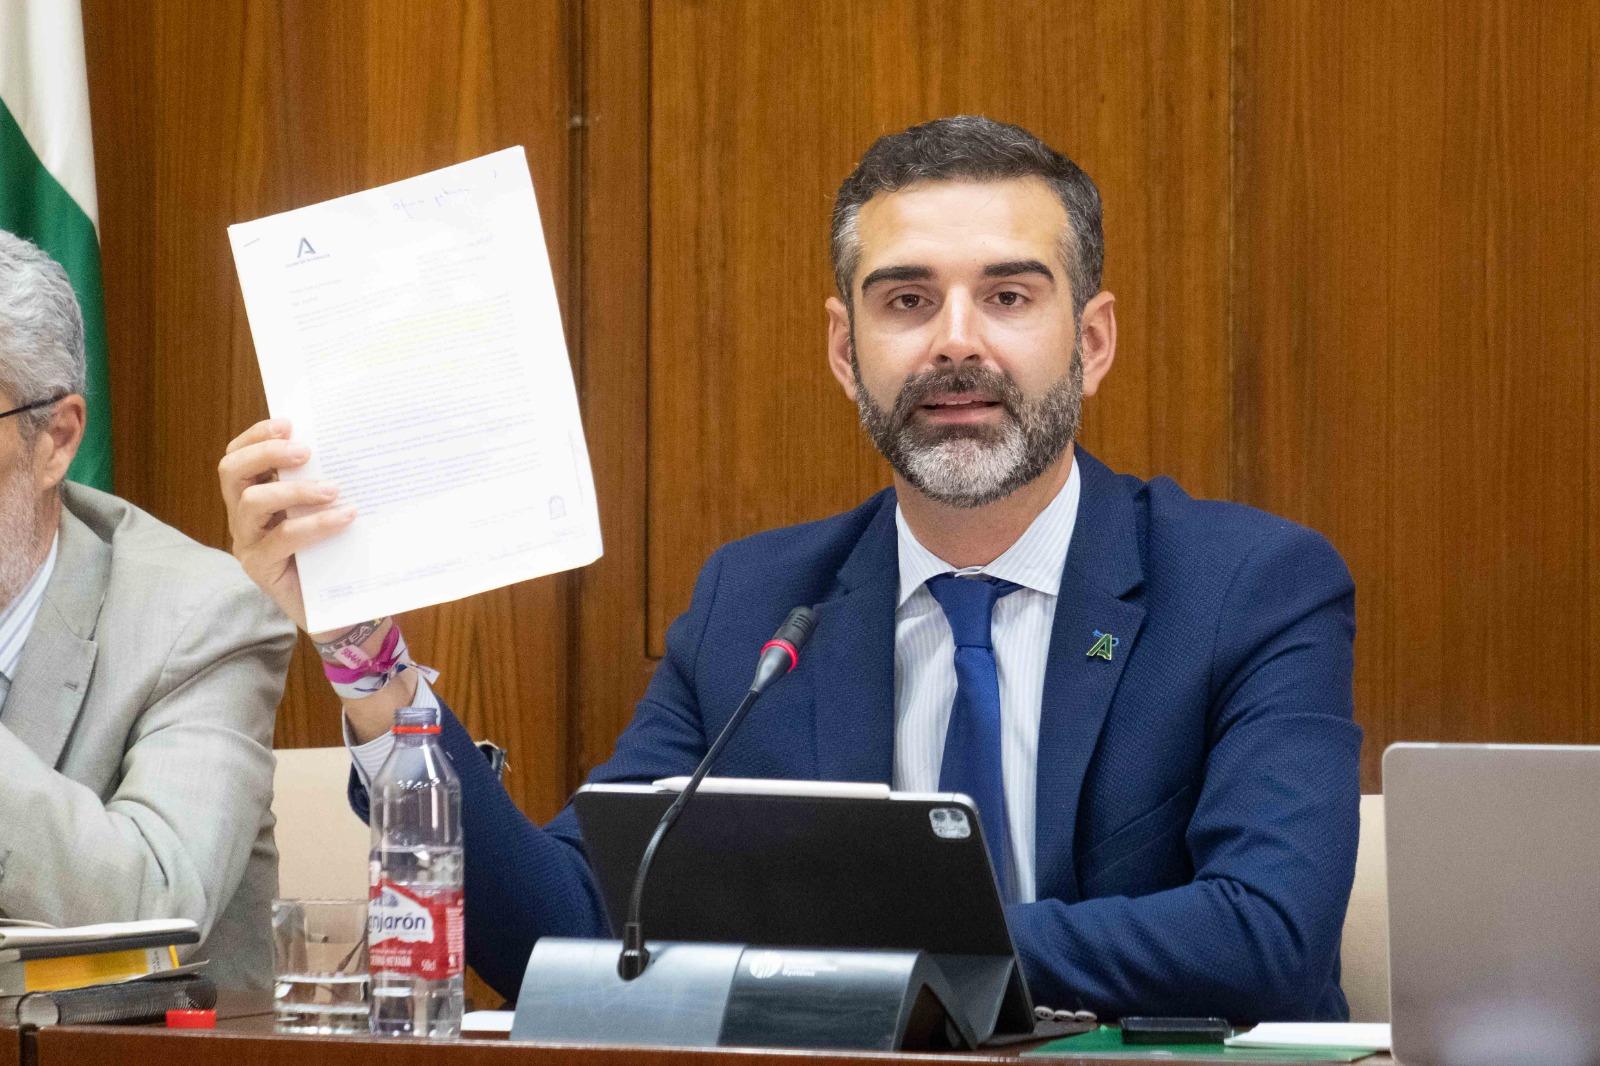 Fernández Pacheco, consejero de Sostenibilidad, Medio Ambiente y Economía azul de la Junta de Andalucía, con la carta enviada al Gobierno Central